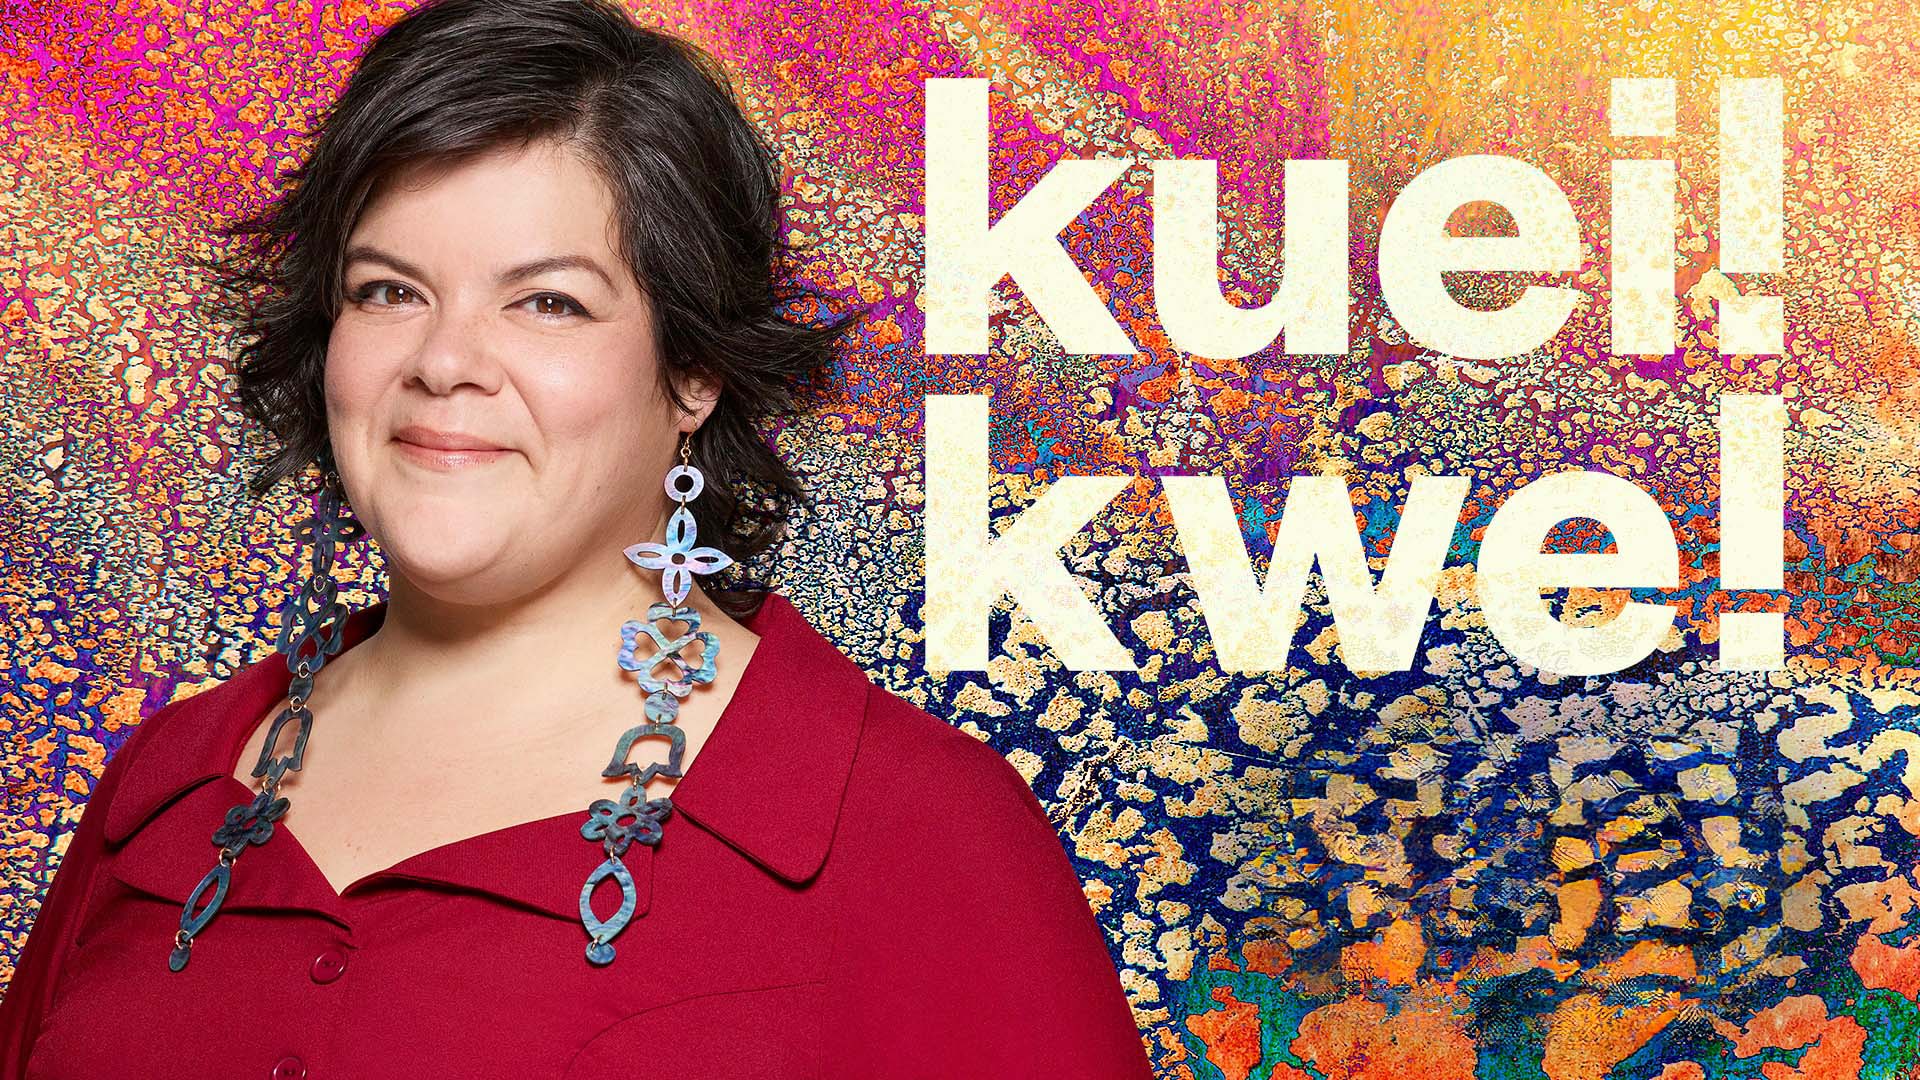 Une image montre l'animatrice d'une émission de radio à gauche avec Kuei! Kwe! à droite sur un fond coloré avec des motifs.